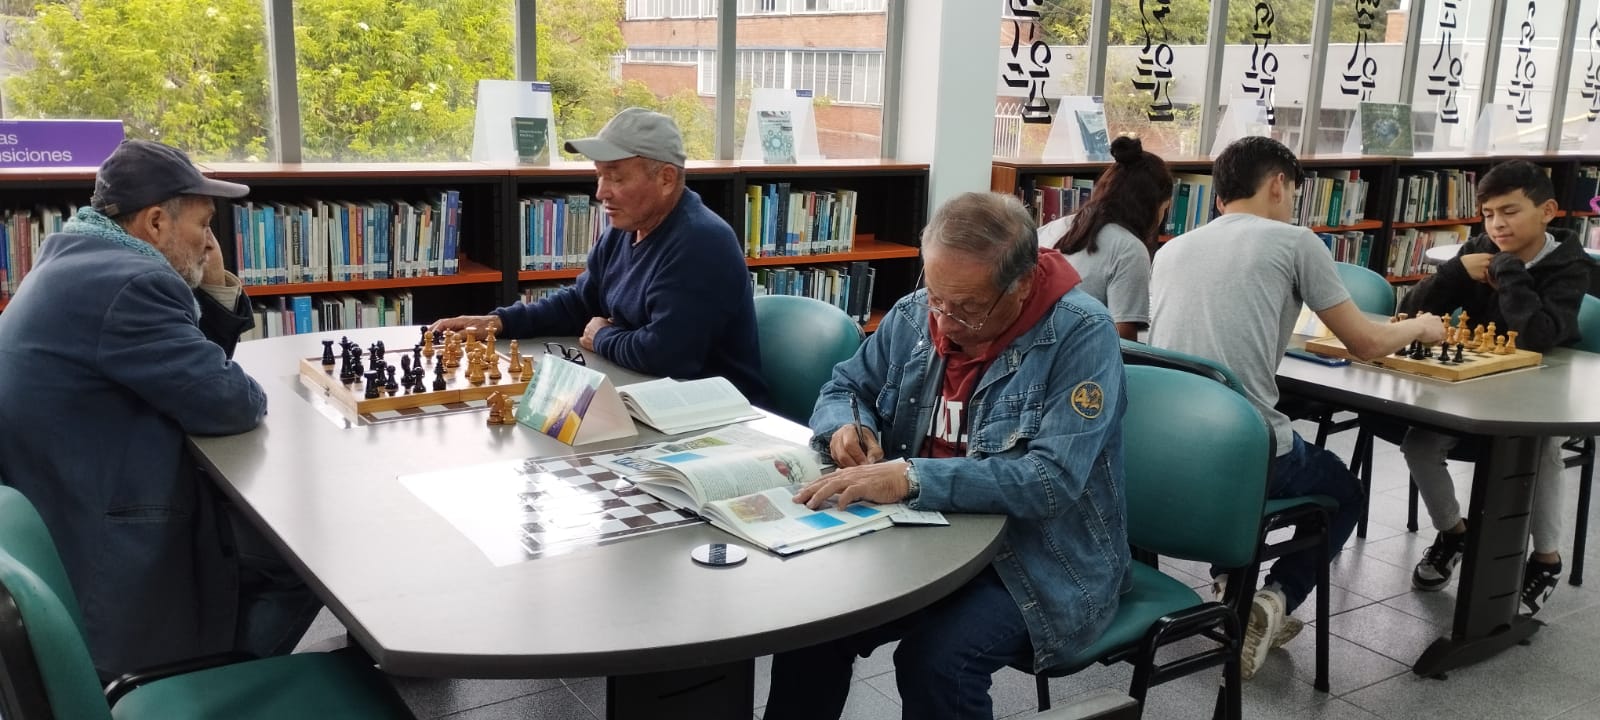 Adultos juegan ajedrez en la biblioteca